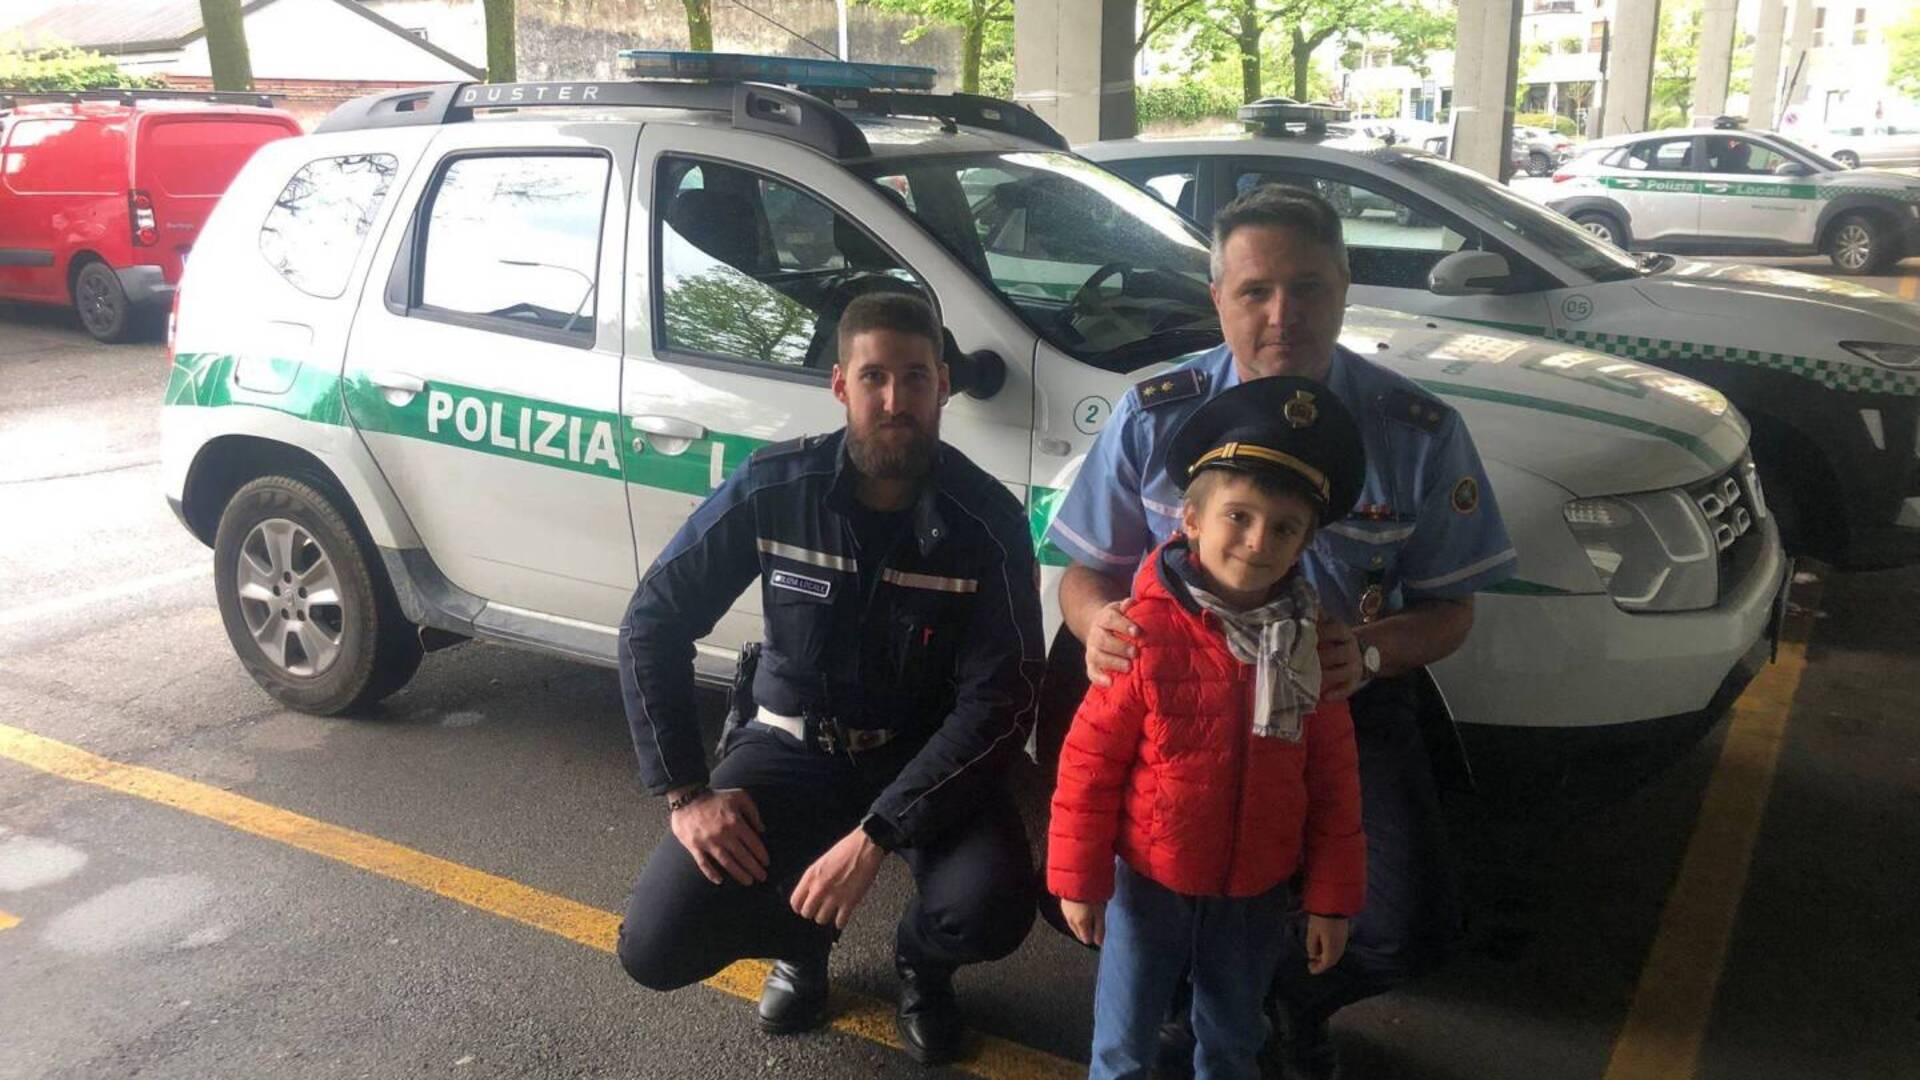 Saronno, Alessandro di 5 anni ritrova 850 euro. E con la polizia locale li restituisce al proprietario